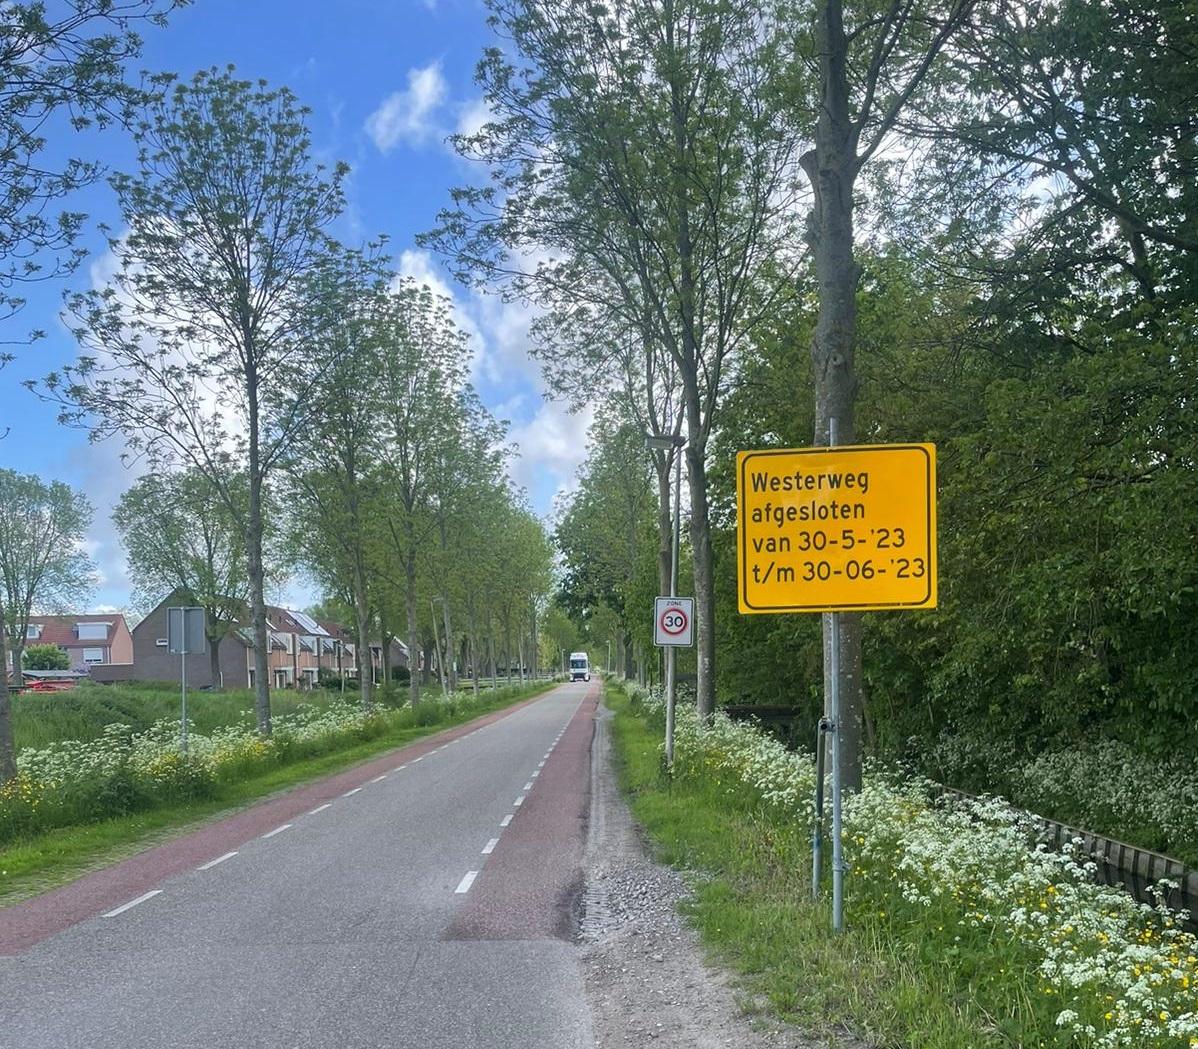 Bord bij de Westerweg dat aangeeft dat de weg van 30 mei tot 30 juni is afgesloten.